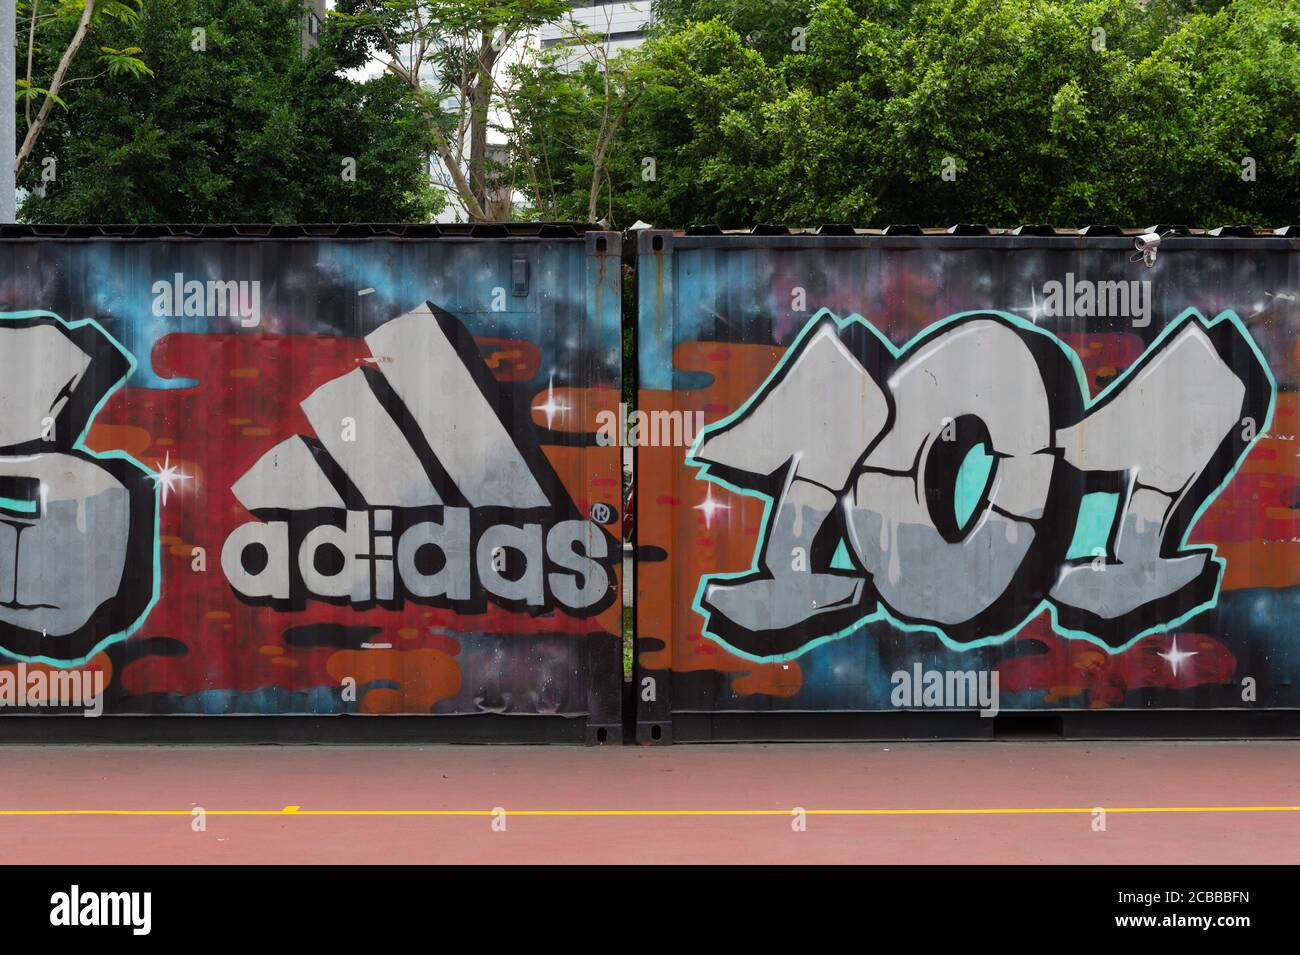 TAIPEI, TAÏWAN - VERS février 2018 : gros plan du logo Adidas. Adidas AG est une société allemande, le plus grand fabricant de vêtements de sport d'Europe Banque D'Images